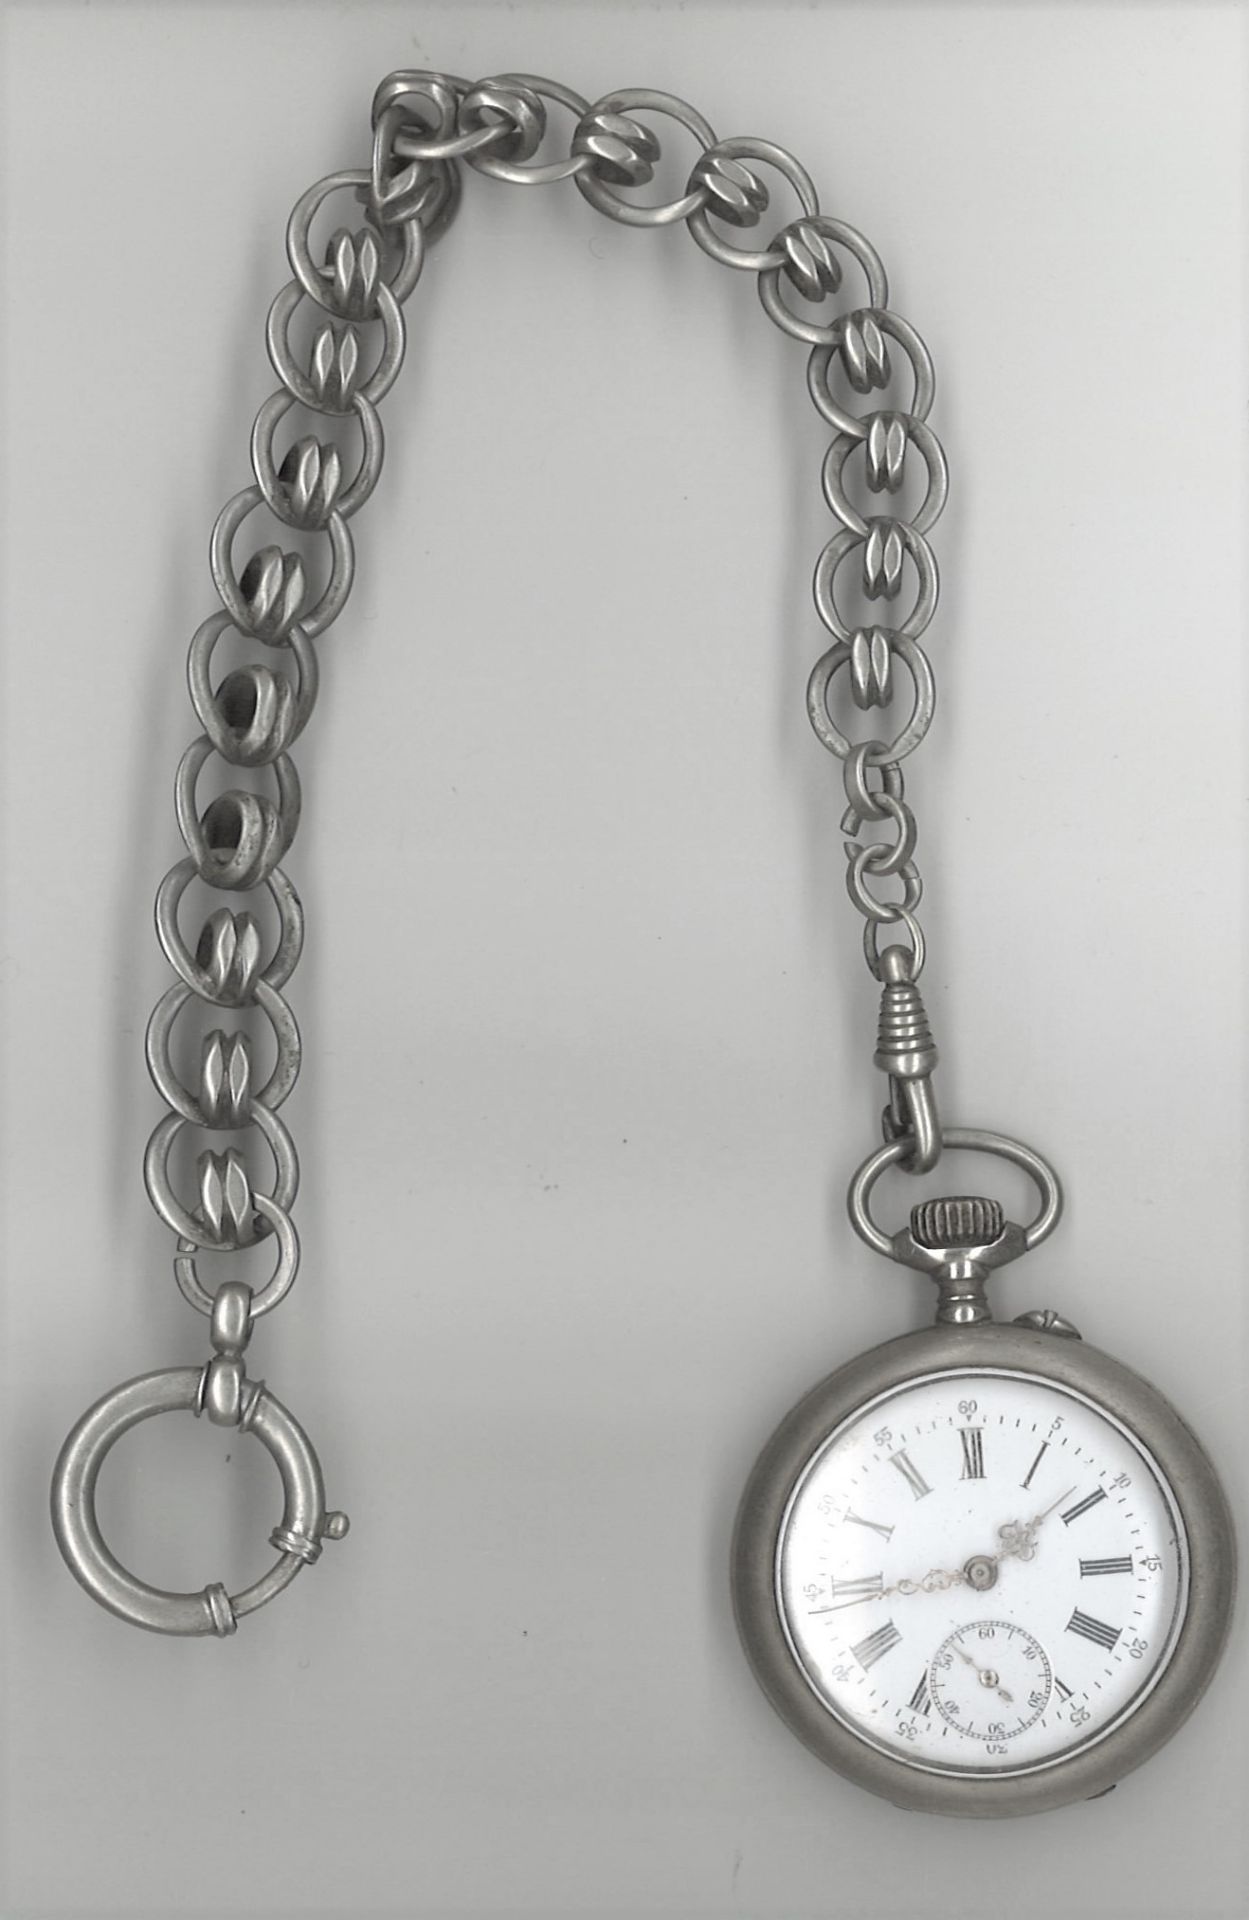 Taschenuhr Metall versilbert, an einer Uhrenkette. Funktion geprüft. Guter, altersbedingter